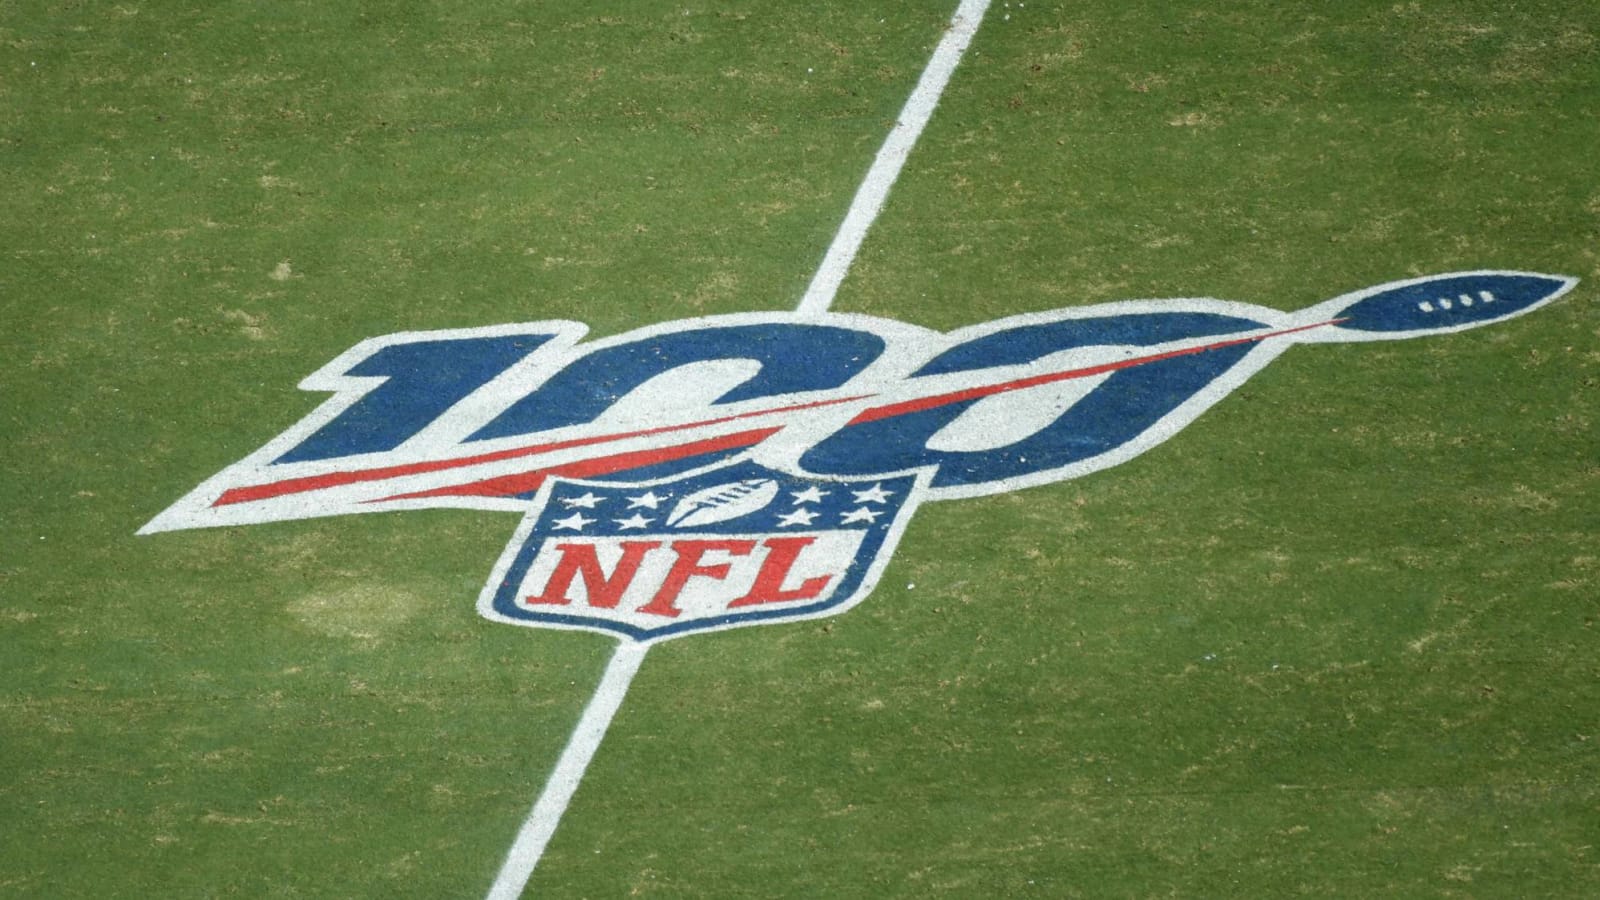 Should NFL end testing for marijuana?